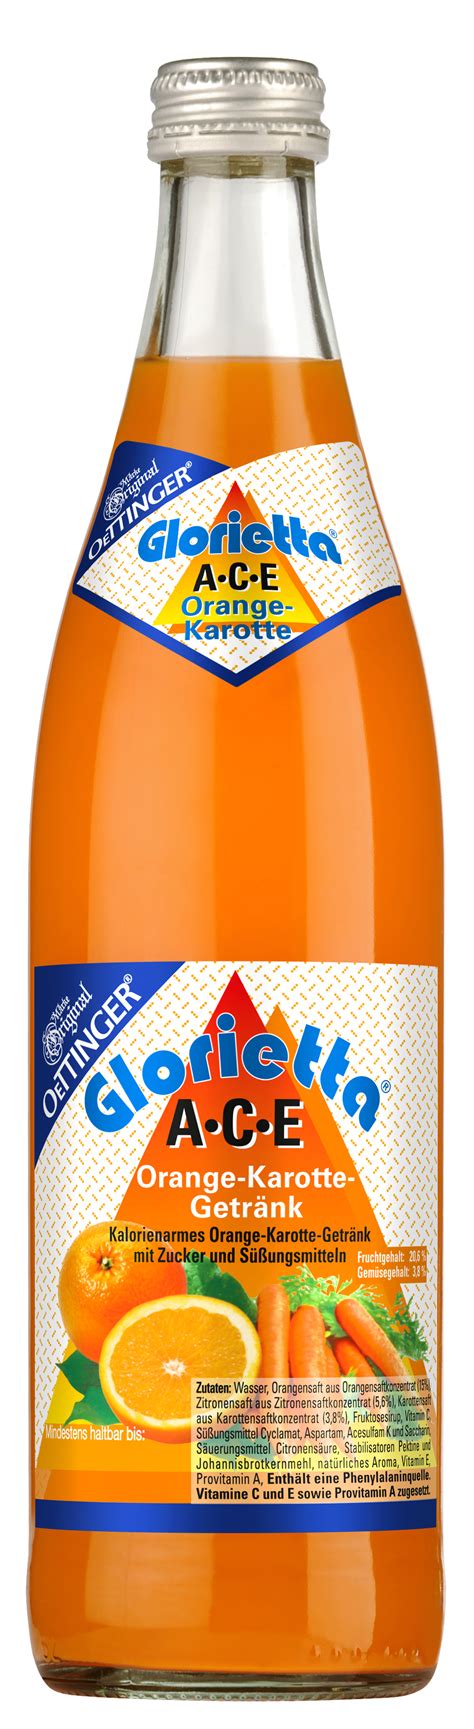 glorietta ace orange karotte getraenk   glas mehrweg ihr zuverlaessiger lieferservice